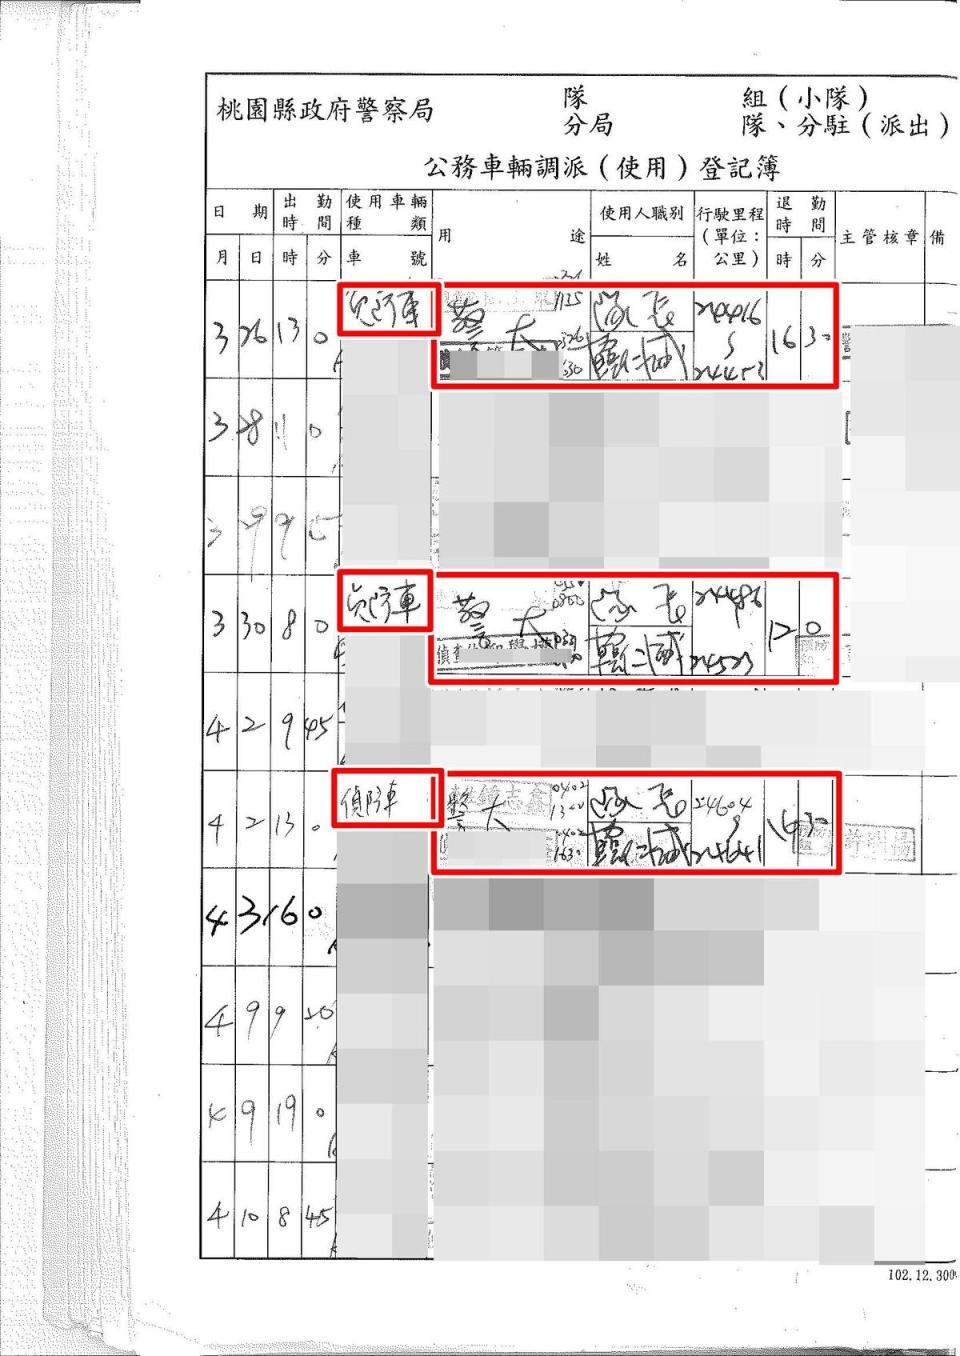 韓在公務車登記簿上的用途欄未寫明目的，僅寫所到地區。（讀者提供）